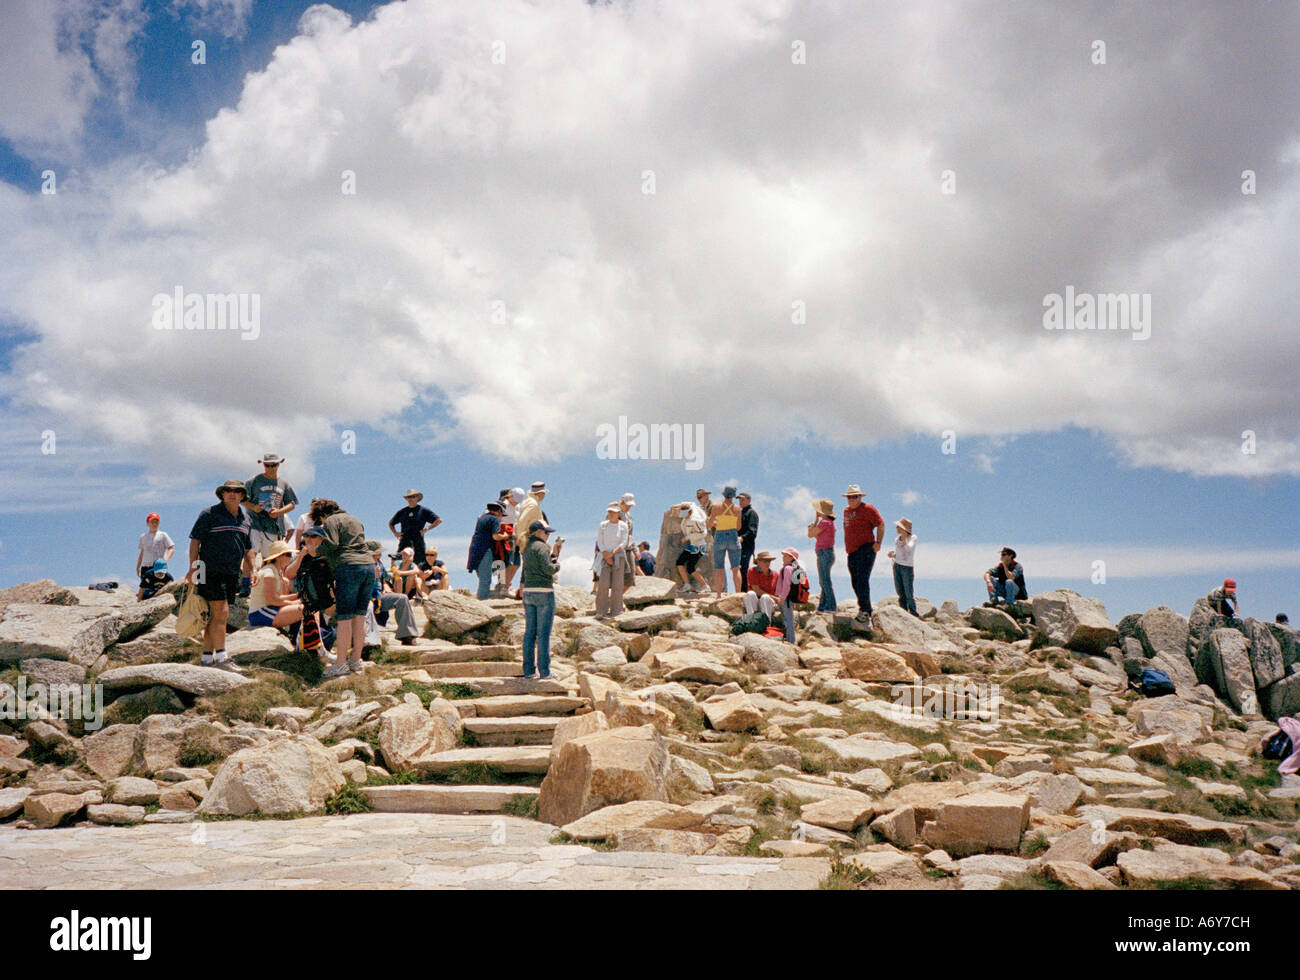 La folla di persone in piedi su una collina rocciosa Foto Stock